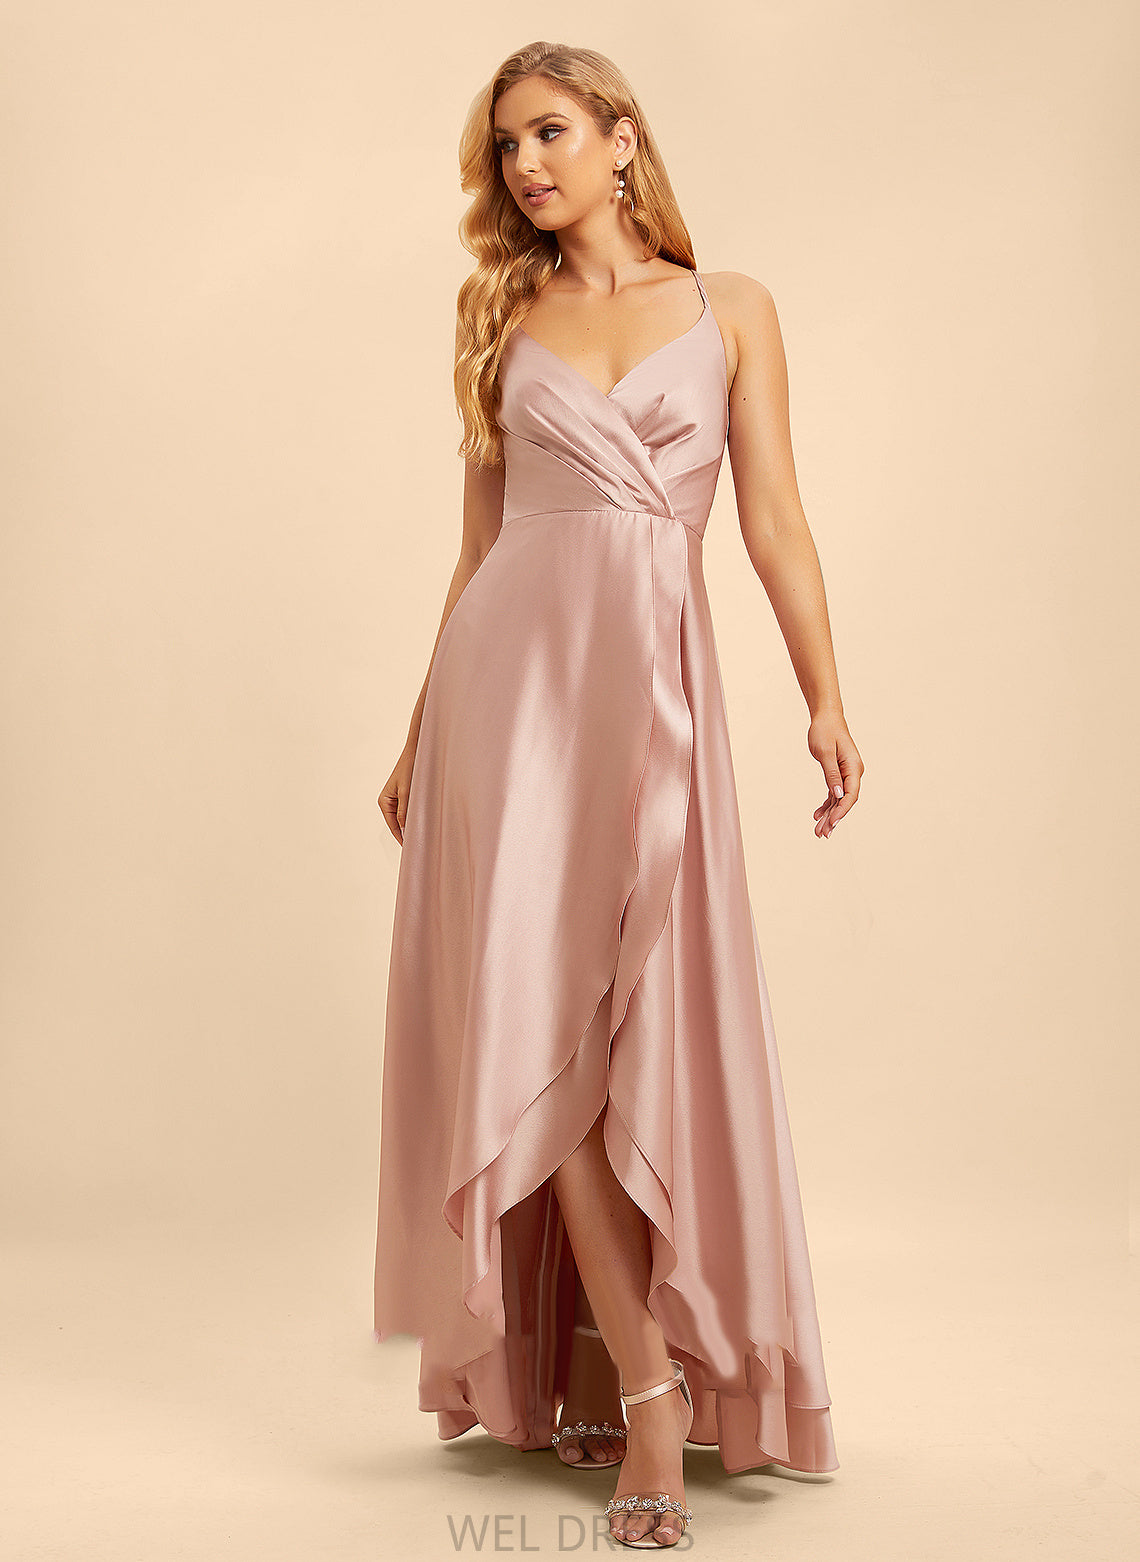 Neckline Embellishment Silhouette Asymmetrical Ruffle Length Fabric A-Line V-neck Stacy Scoop A-Line/Princess Bridesmaid Dresses